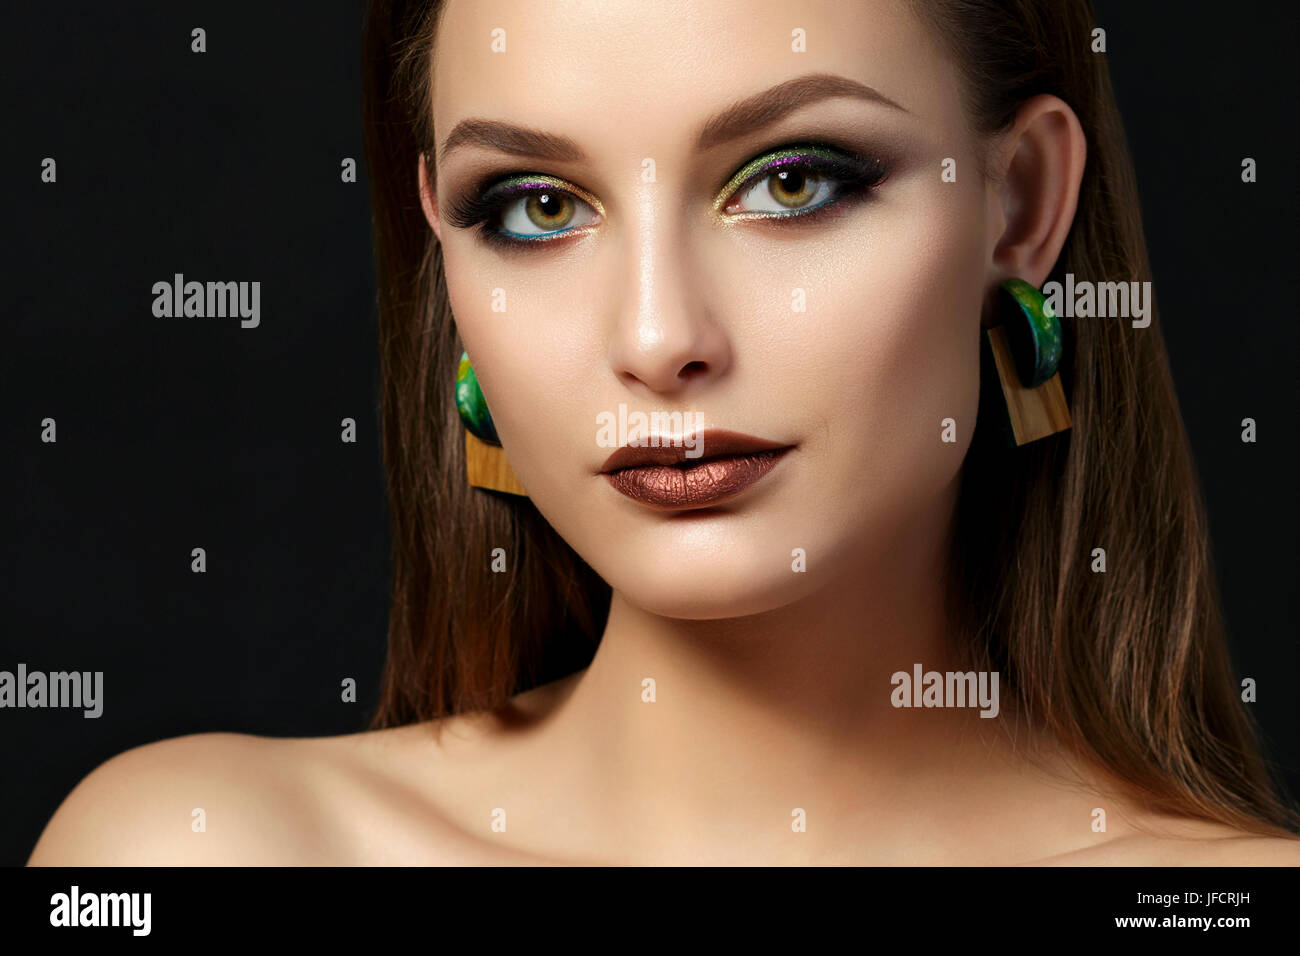 Close up portrait of young woman with brown lèvres et yeux smoky vert sur fond noir. Sourcils parfaits. La mode moderne. Studio shot Banque D'Images